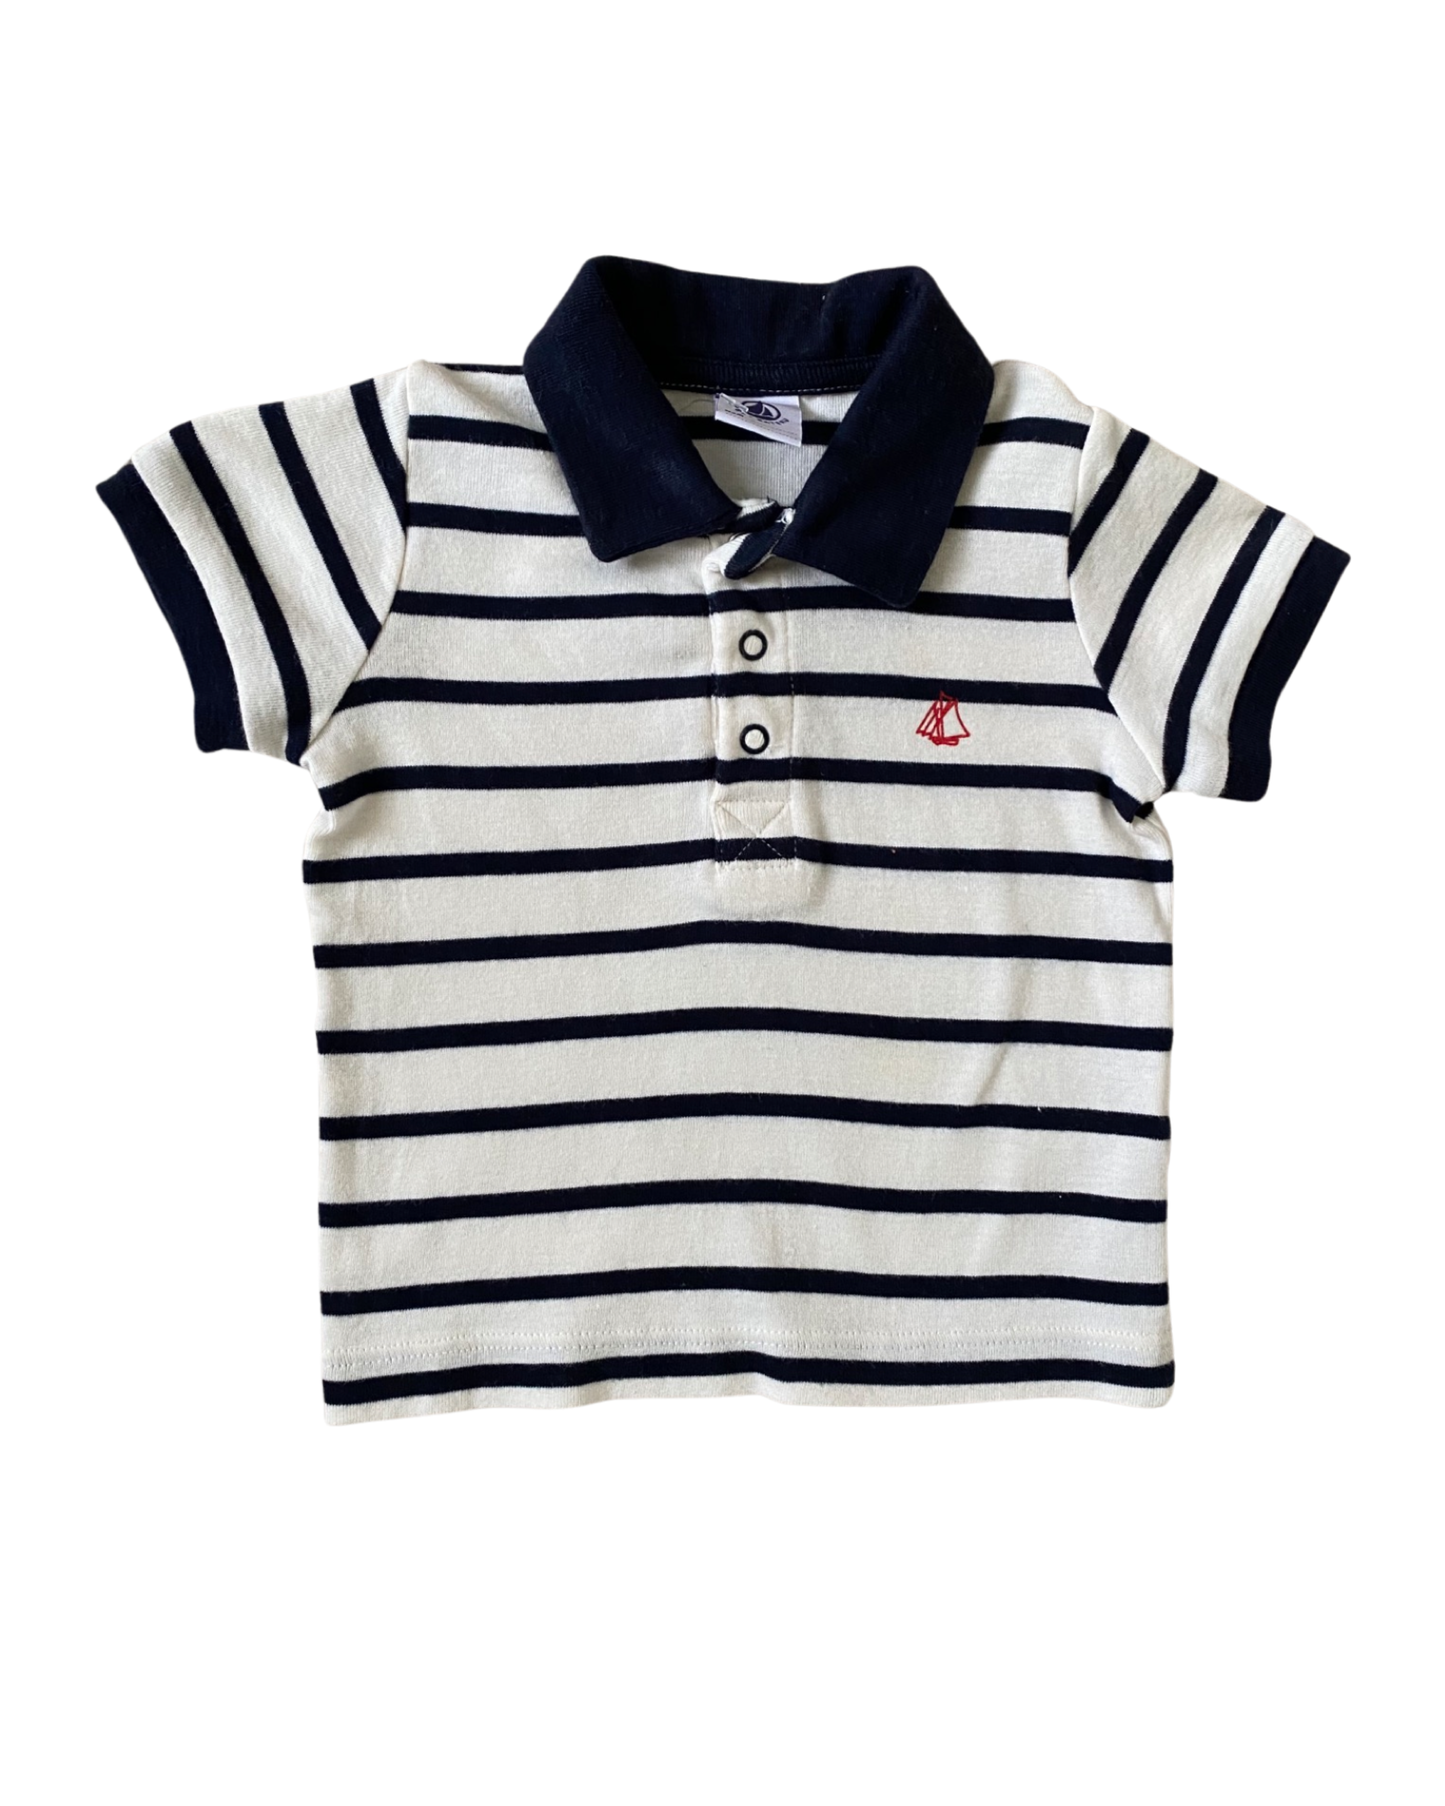 Petit Bateau breton striped polo shirt (size 3-6mths)